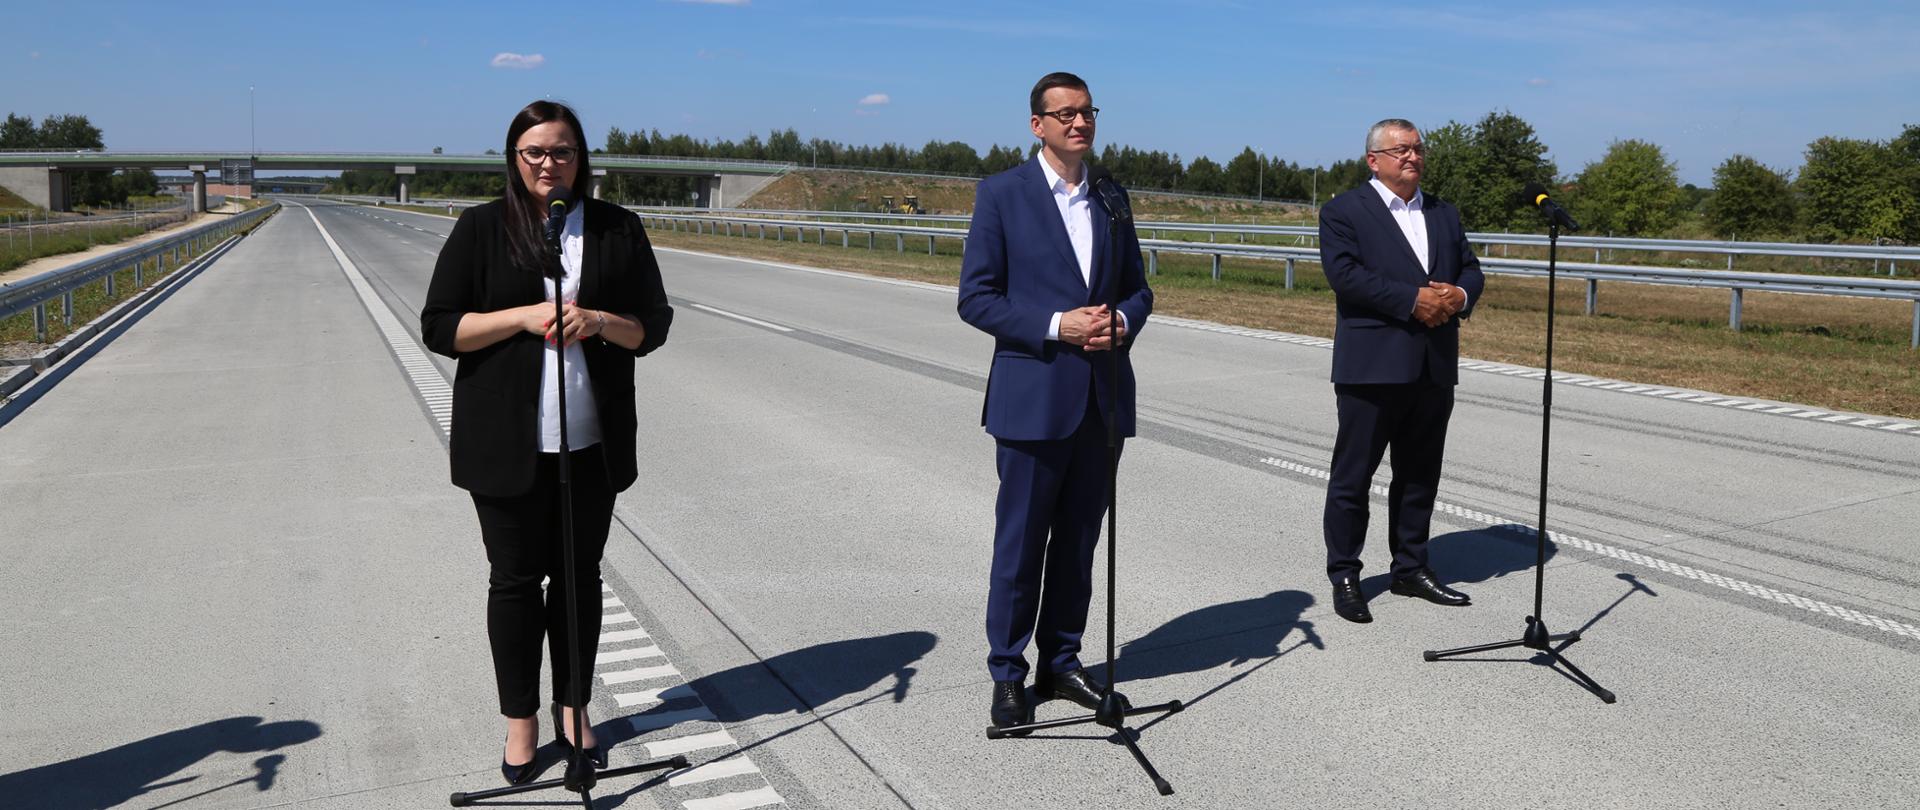 na nowo otwartej autostradzie stoją uczestnicy konferencji od lewej minister Małgorzata Jarosińska-Jedynak, premier Mateusz Morawiecki i minister Andrzej Adamczyk